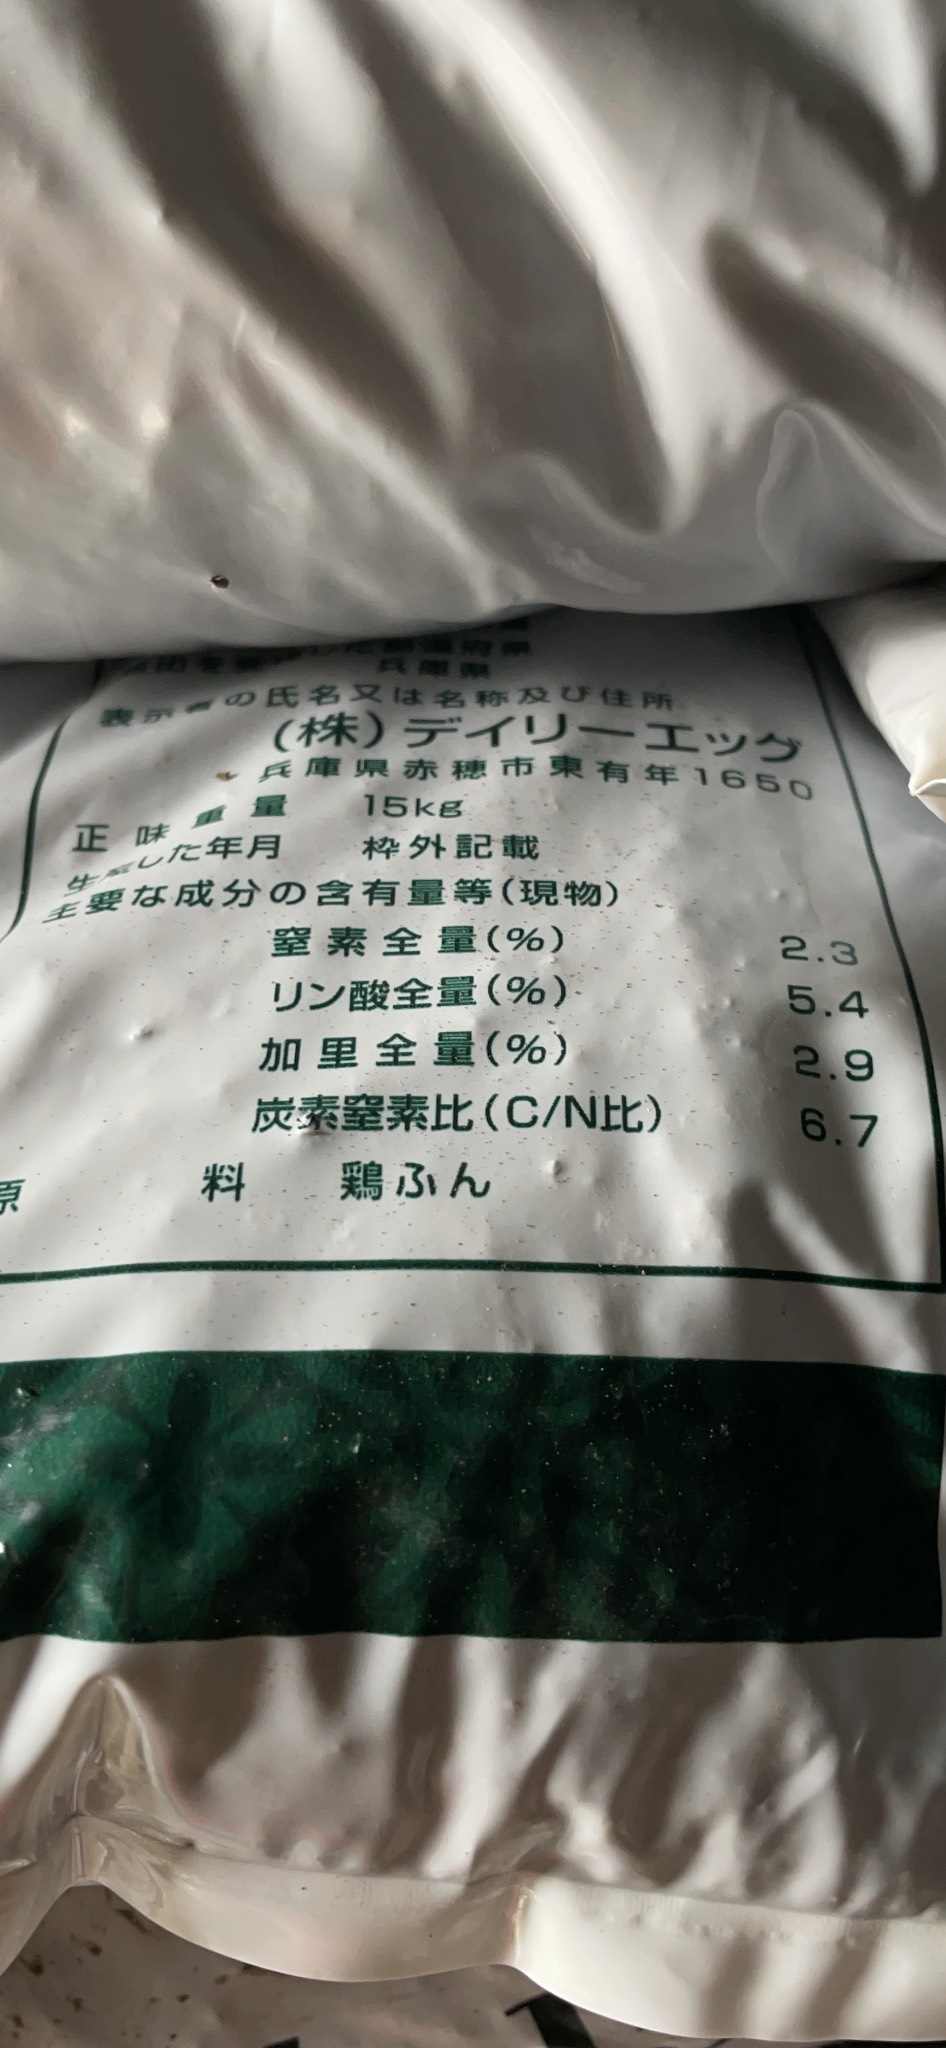 Phân gà hữu cơ nhập khẩu Nhật Bản NPK 2-5-3 bao 15kg